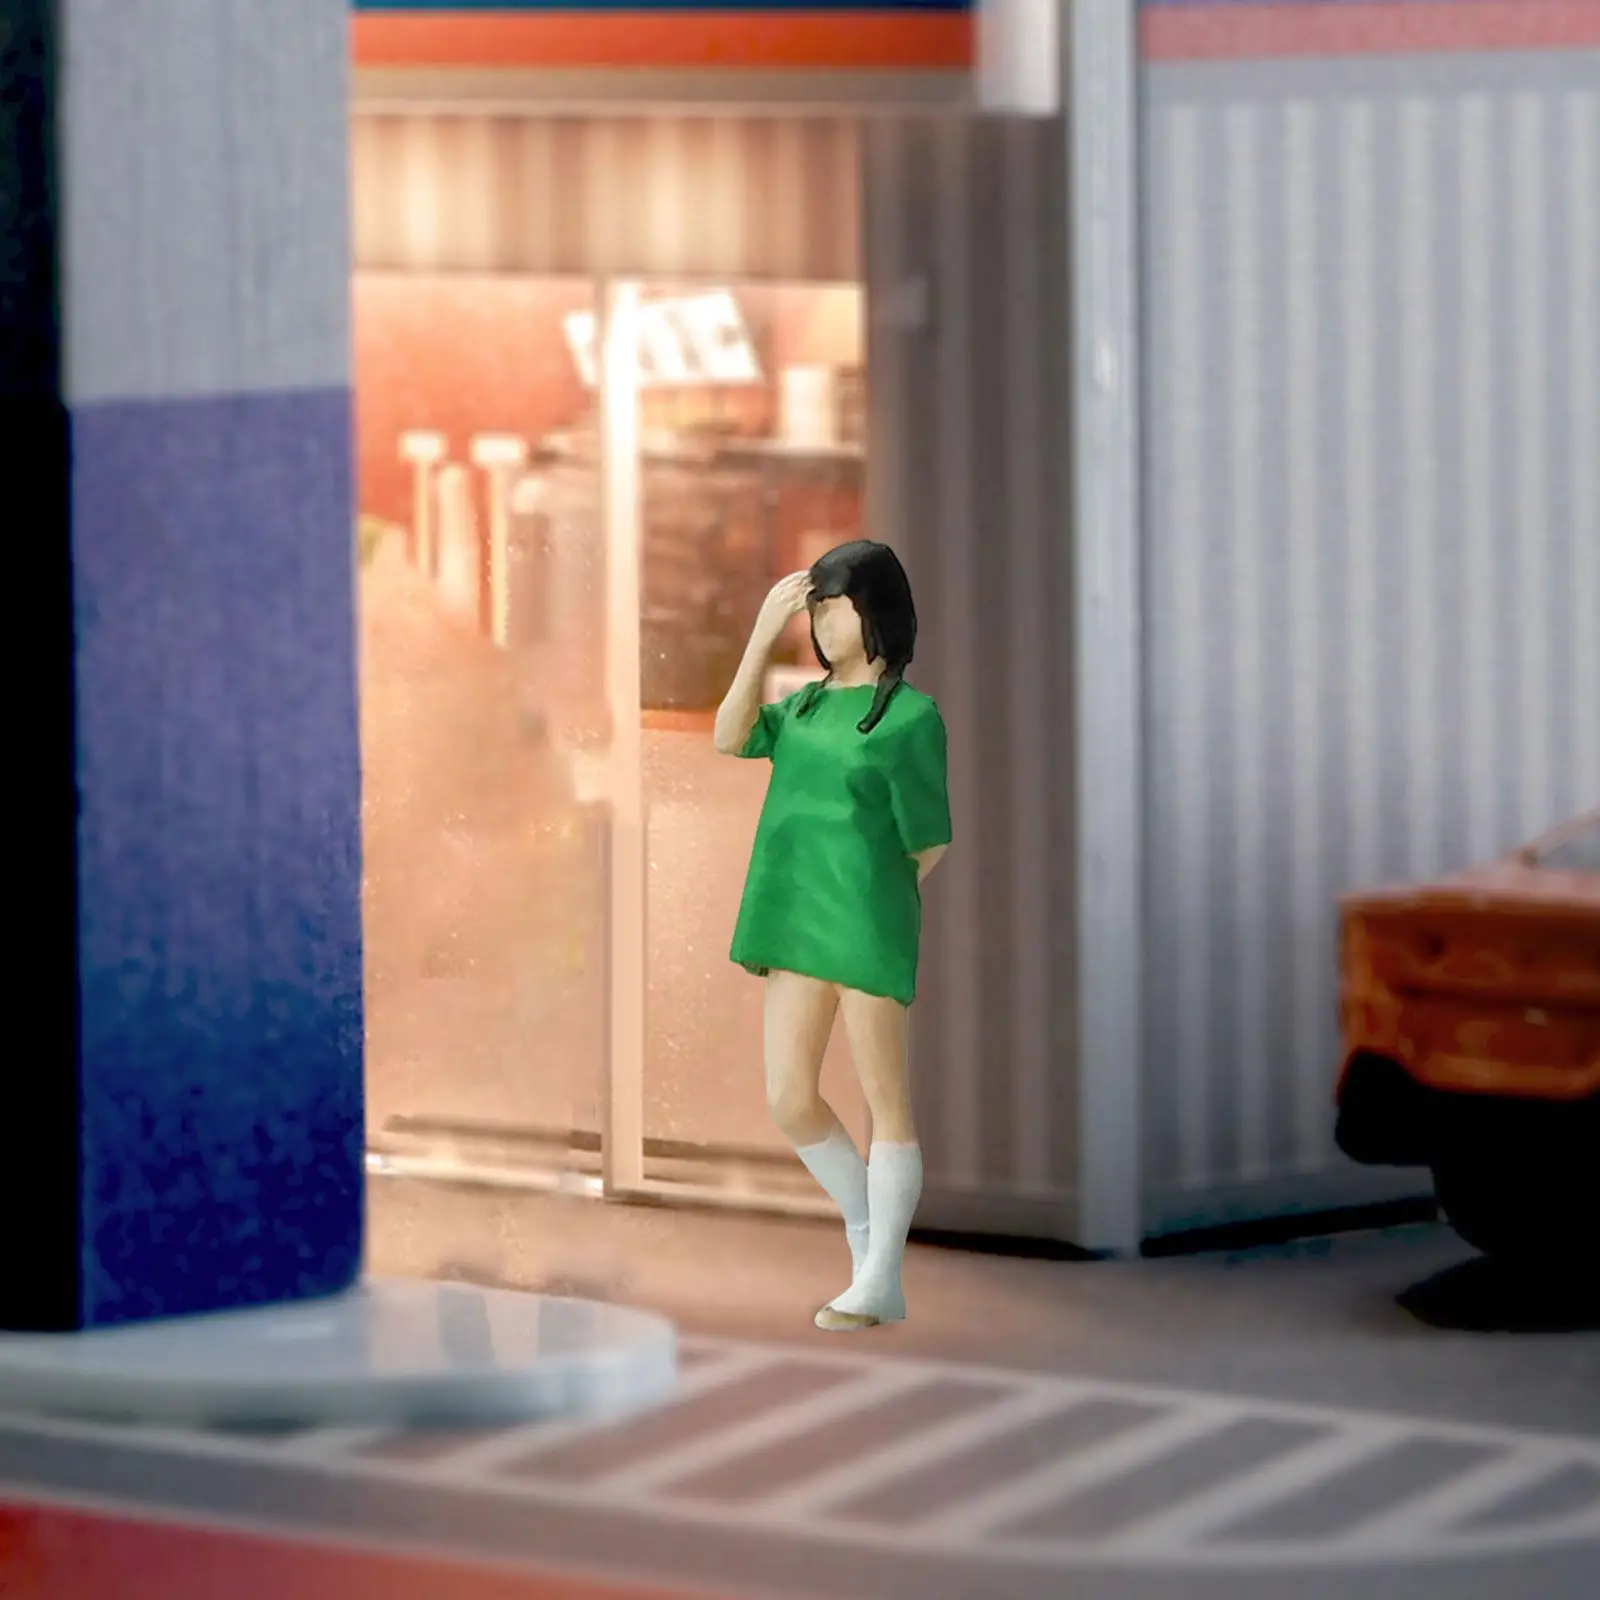 1:64 People Figures Miniature People Figurines,Tiny People Model for Miniature Scene